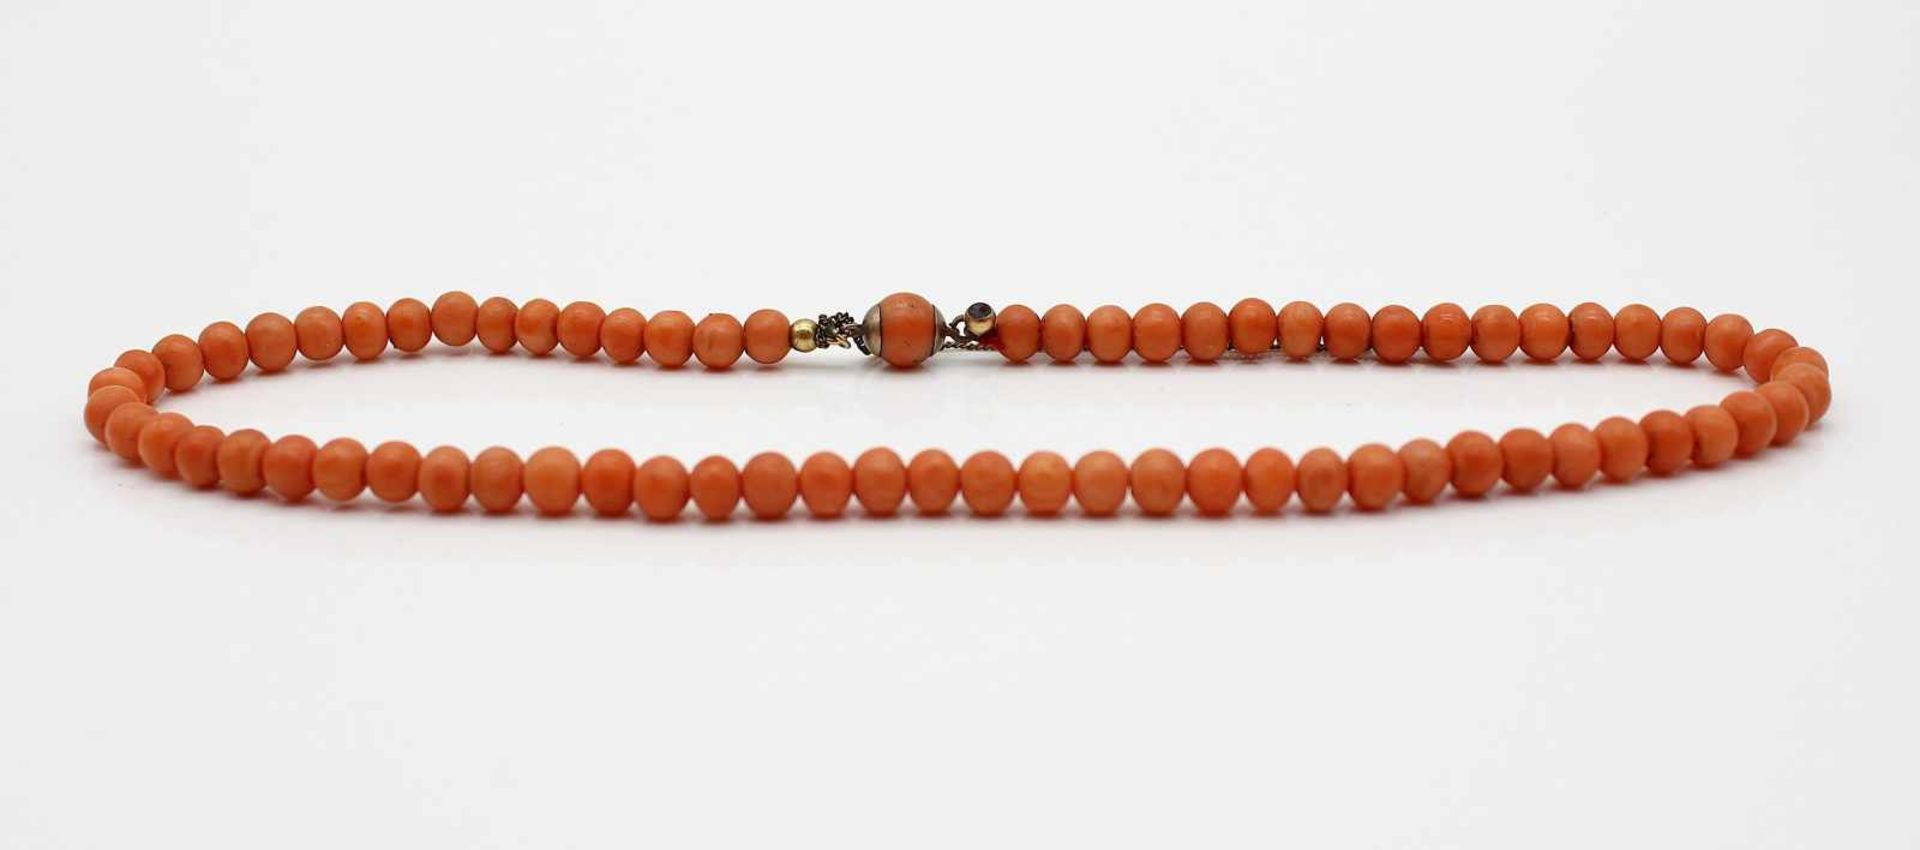 Coral necklace, metal clasp.Length 36 cmKorallenkette, Verschluss Metall.Länge 36 cm - Bild 3 aus 3